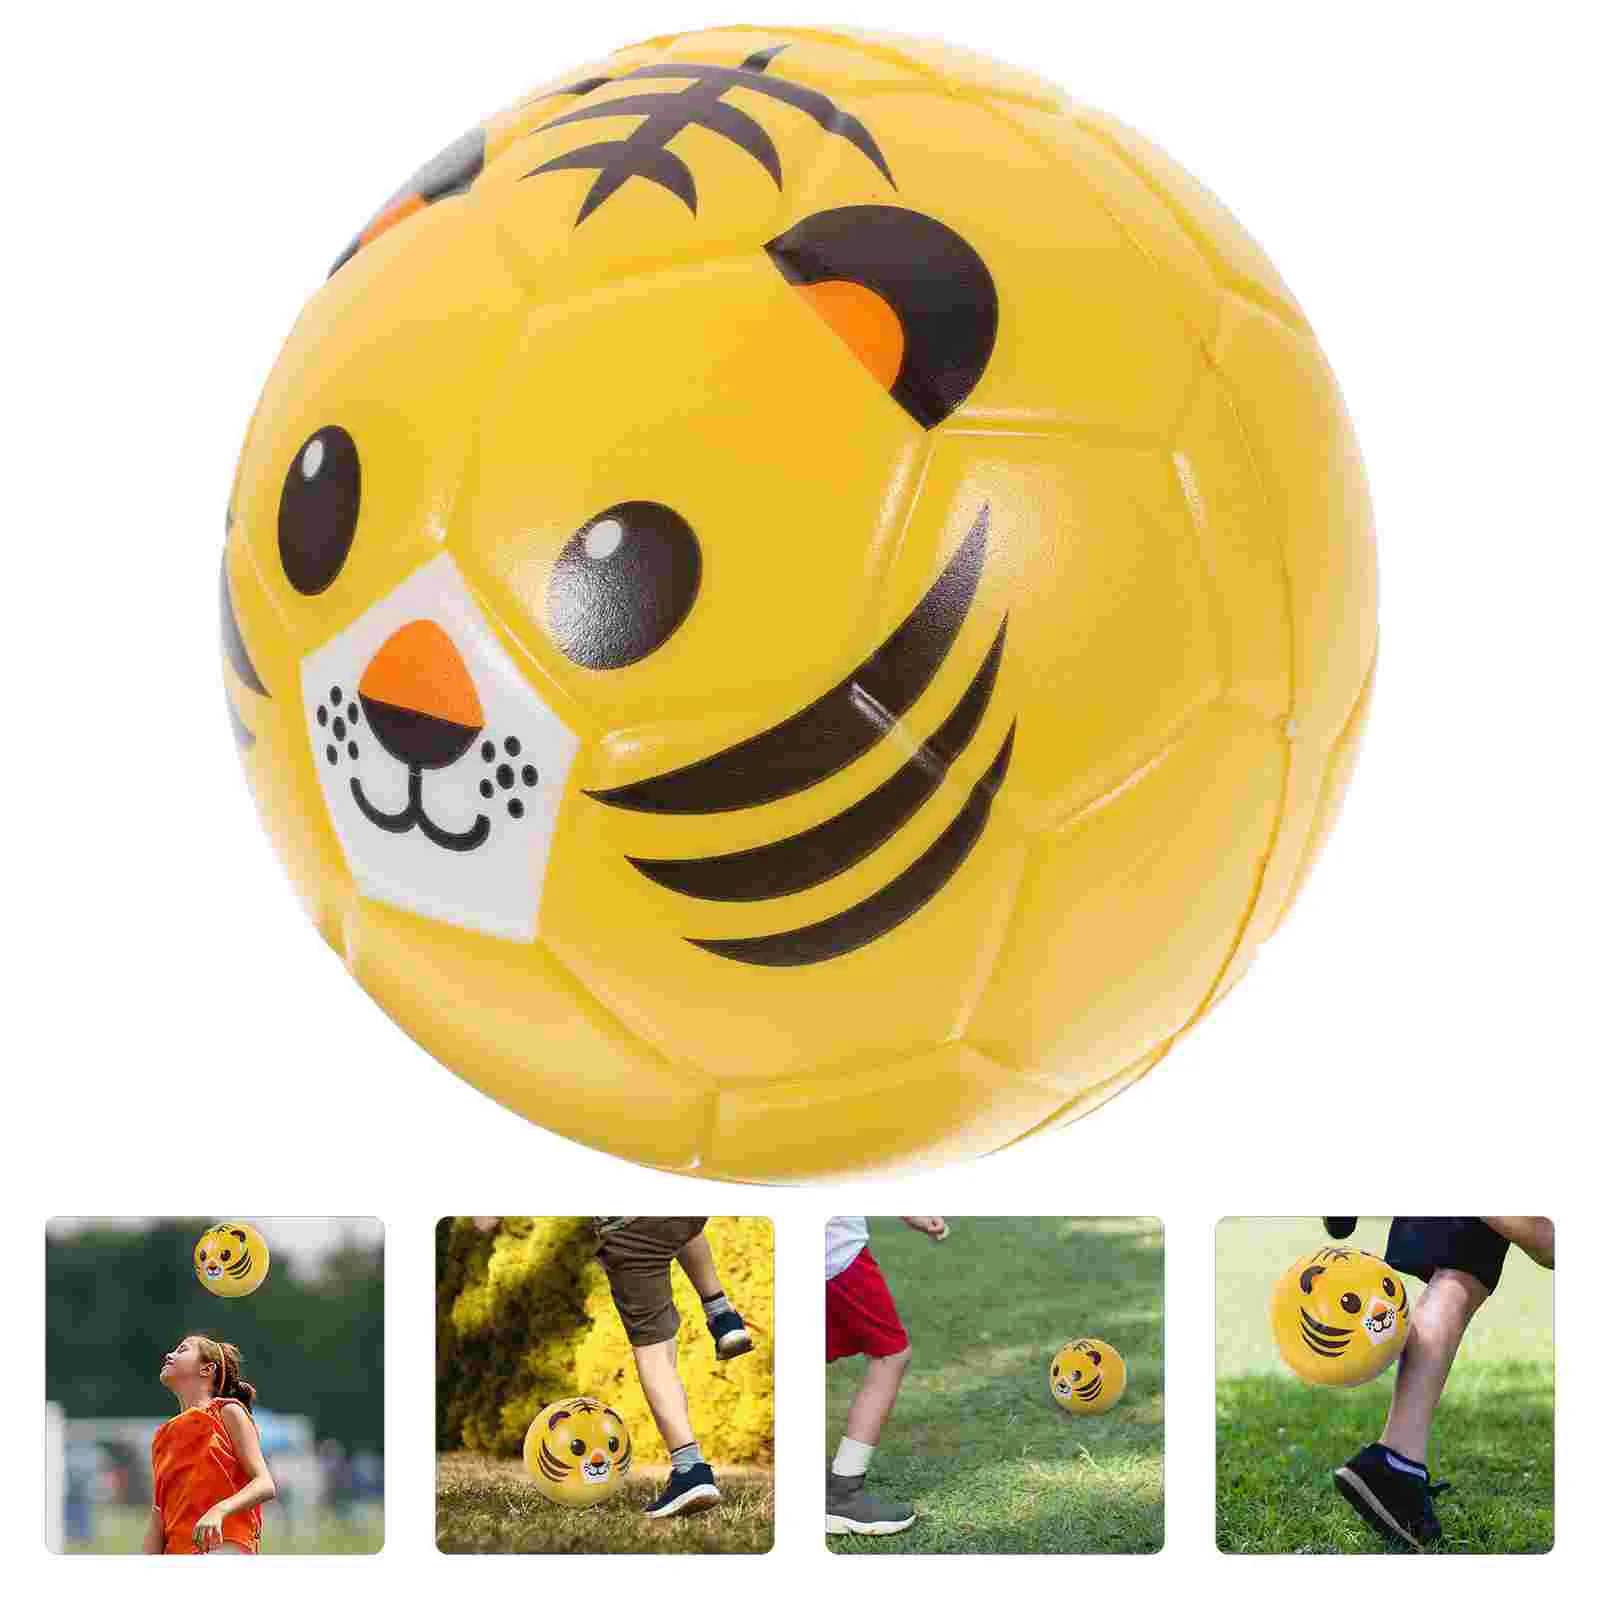 

Детский футбольный мяч из ПУ кожи, детская игрушка, футбольный мяч из полиуретана с животными, дизайн футбола